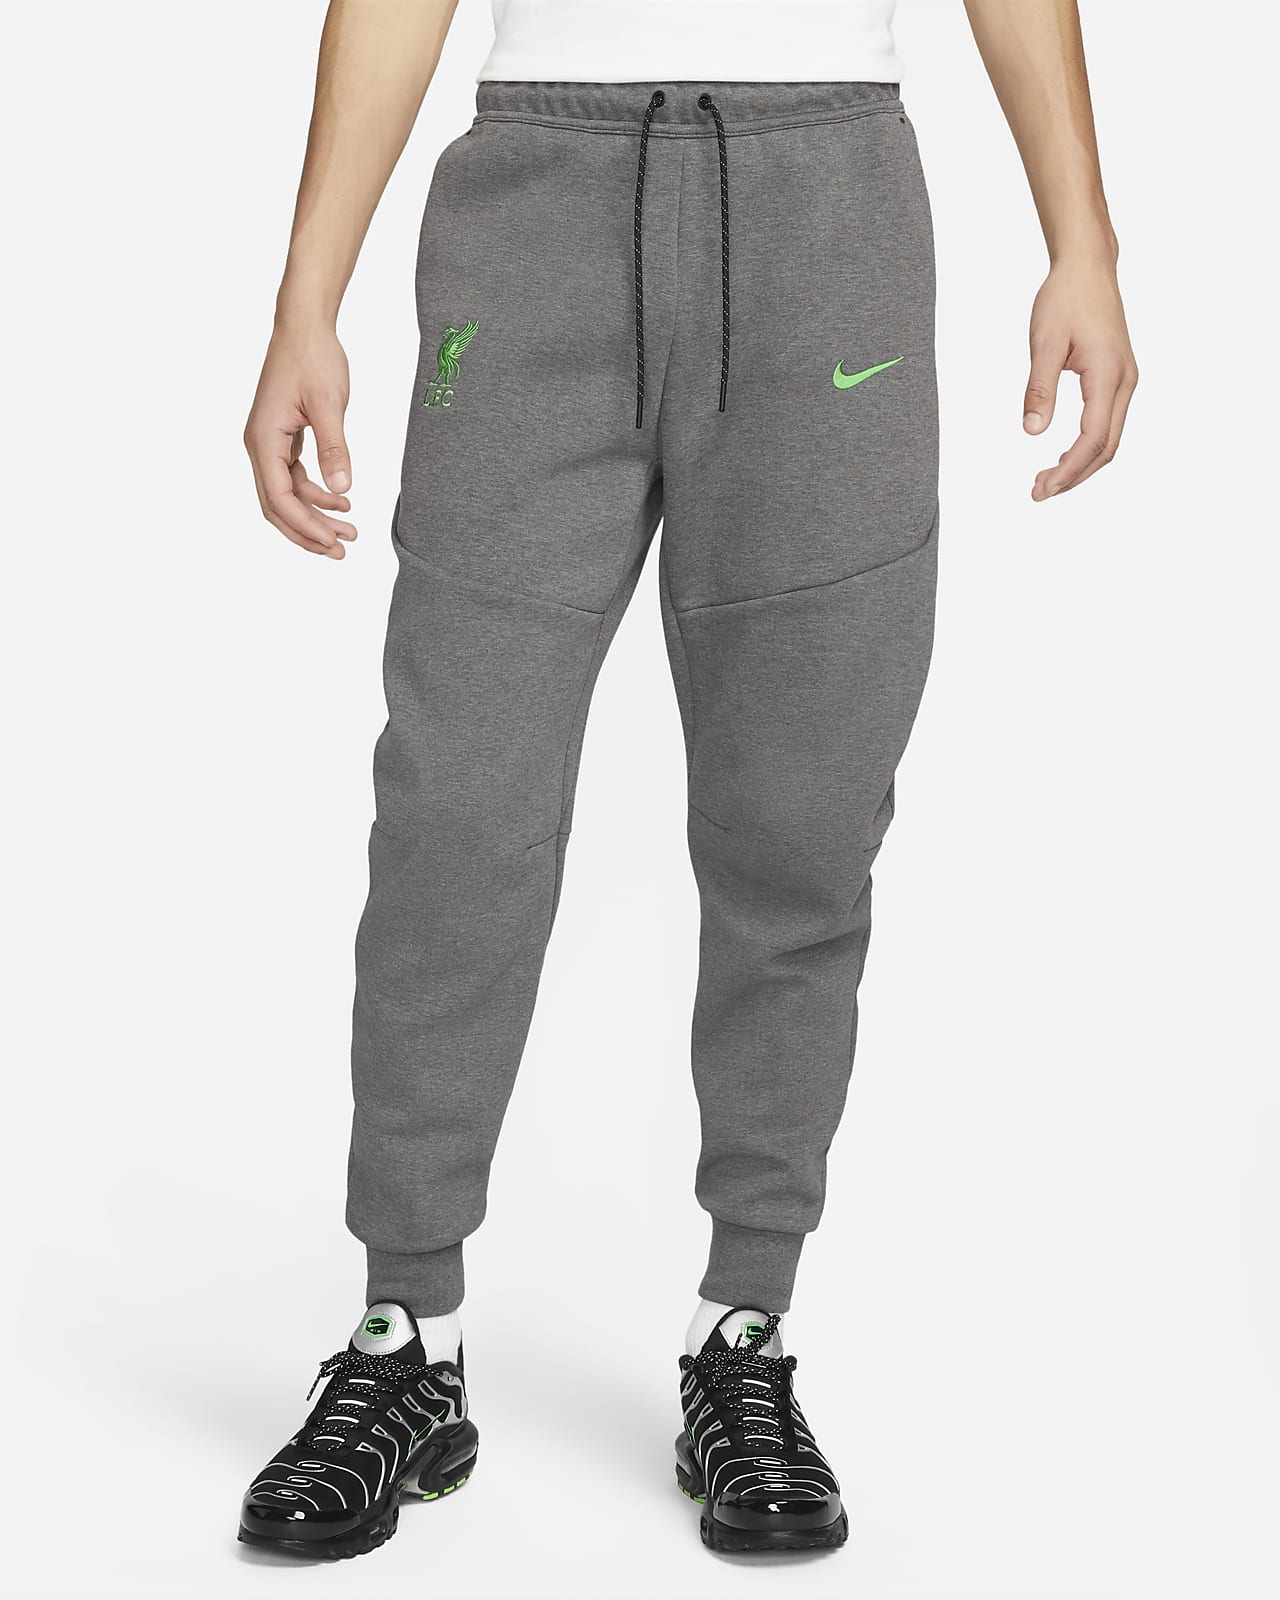 Nike Tech Fleece winter joggers in khaki green